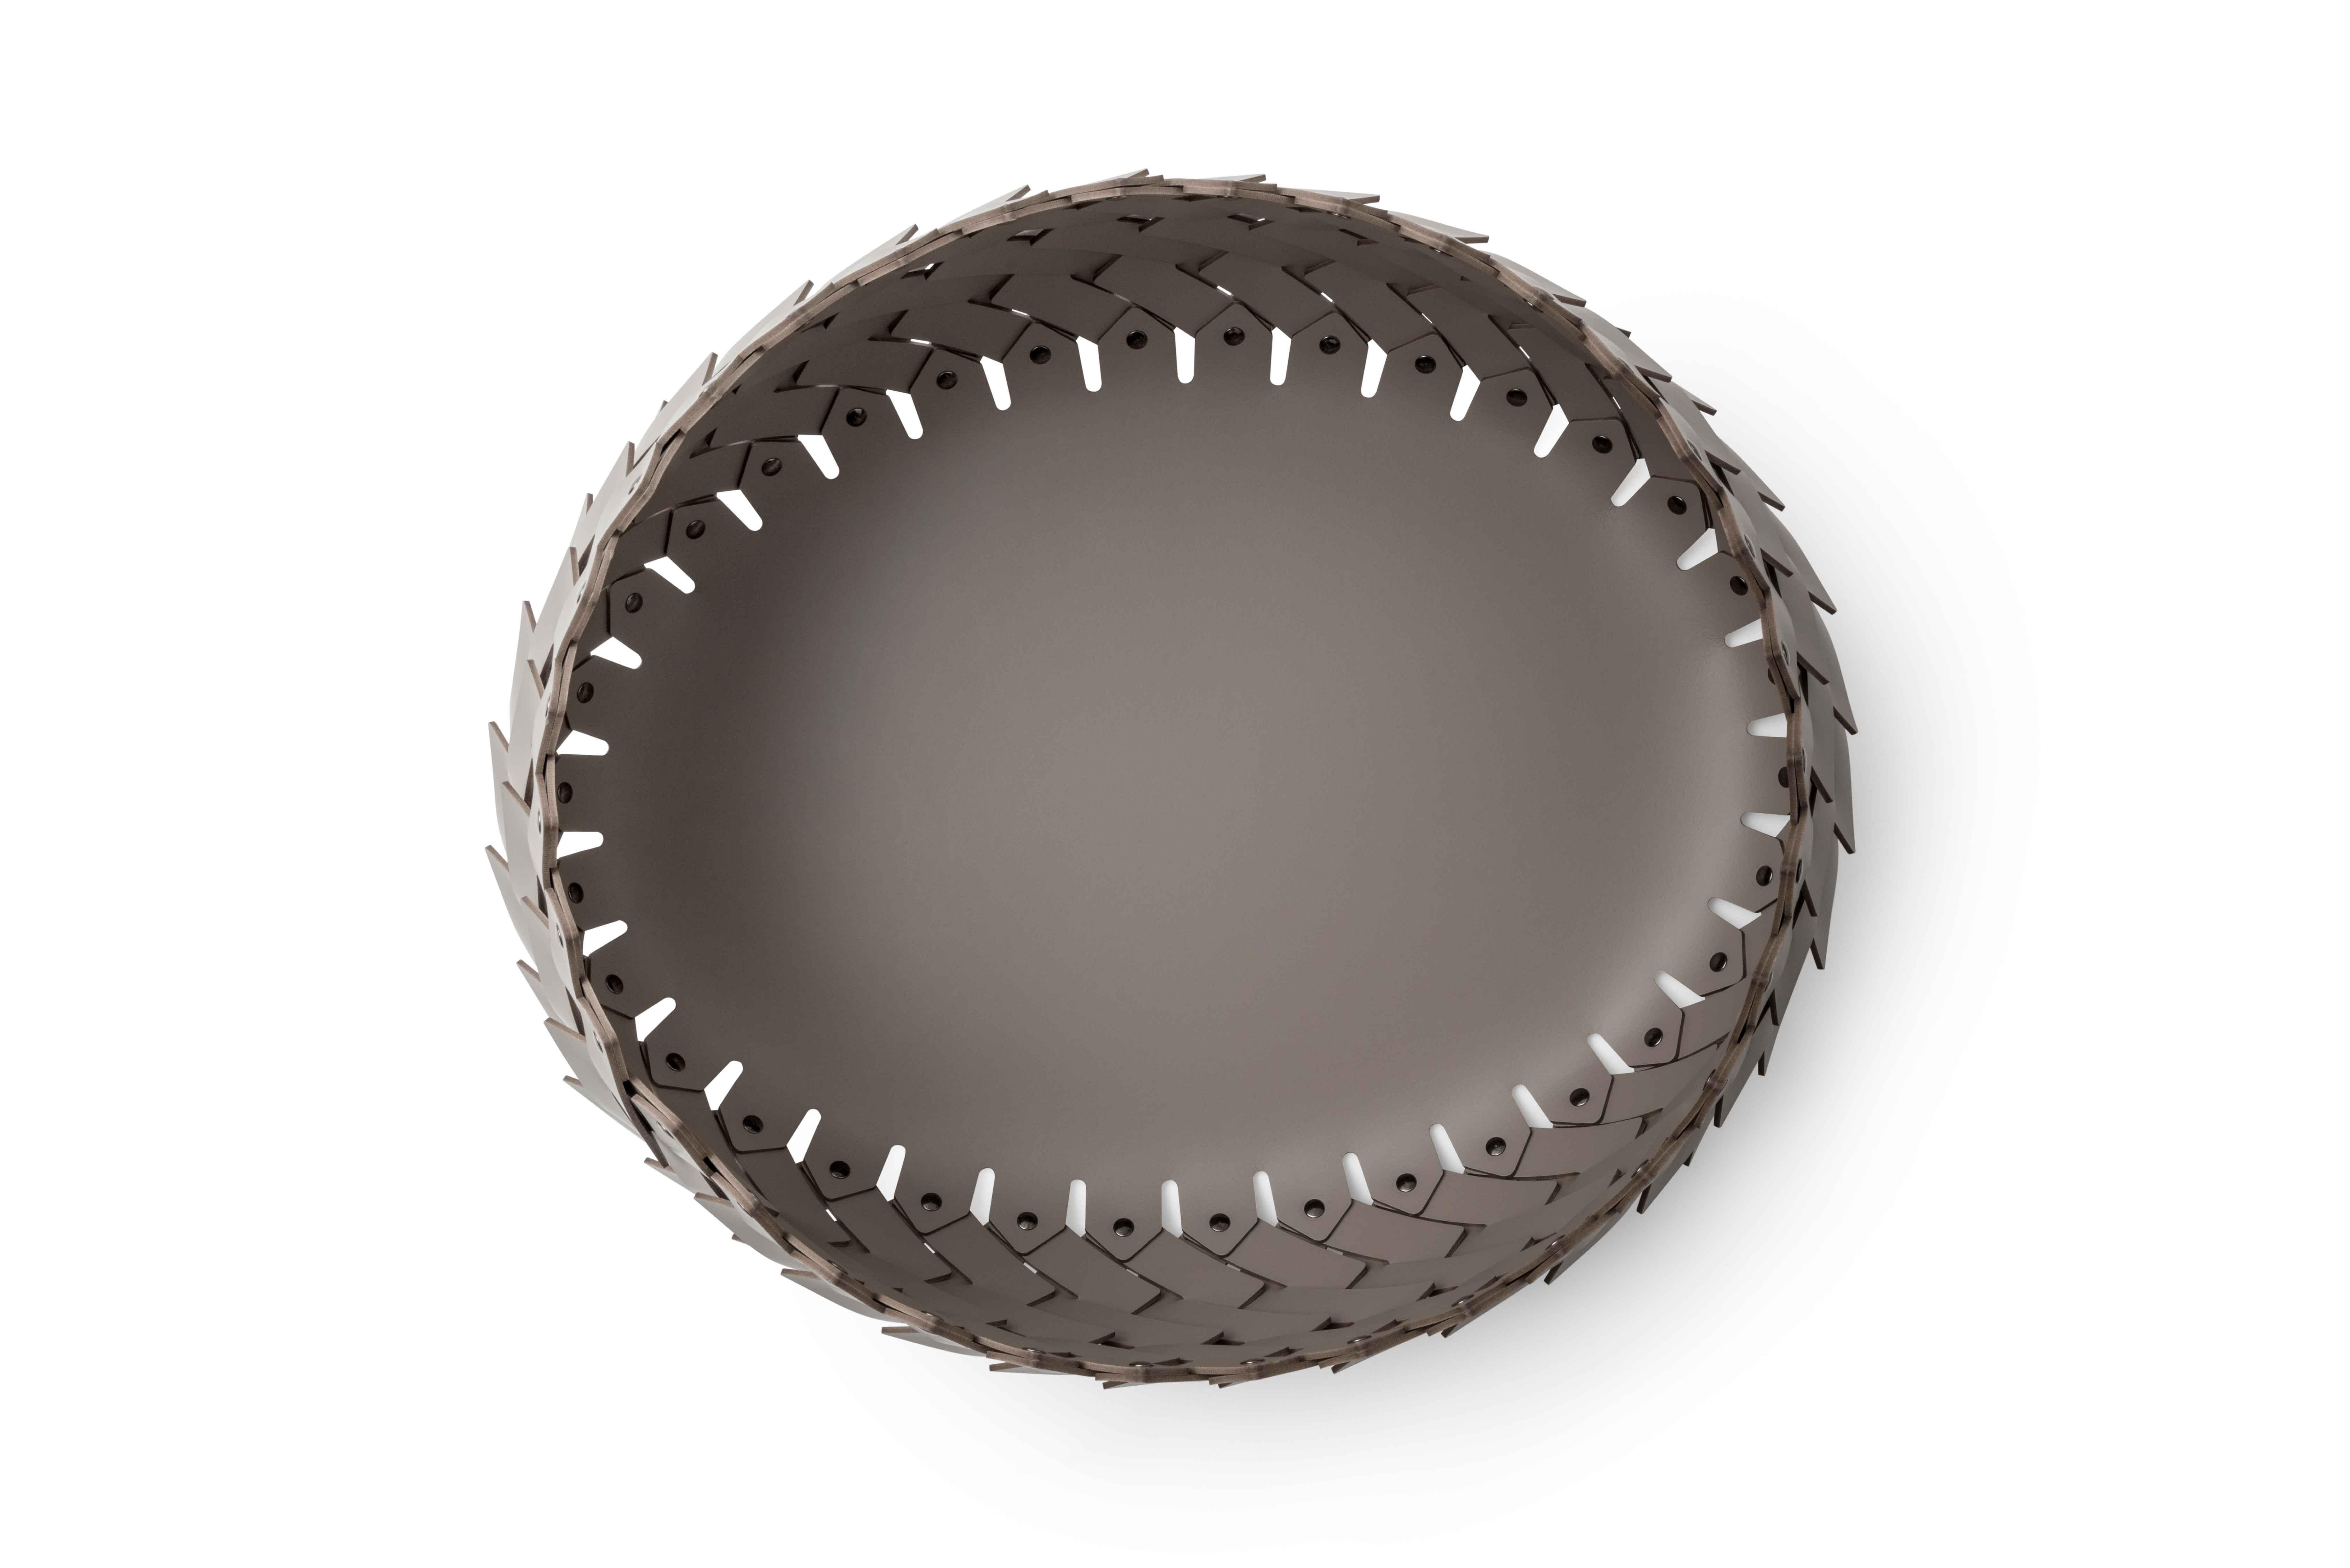 Äußerst elegant und vielseitig, Teil der Serie Almeria.

Dieser ovale Korb aus umweltfreundlichem, waschbarem und widerstandsfähigem regeneriertem Leder eignet sich perfekt als Holzhalter, im Wohnzimmer oder als Schuh- oder Handtuchkorbhalter für